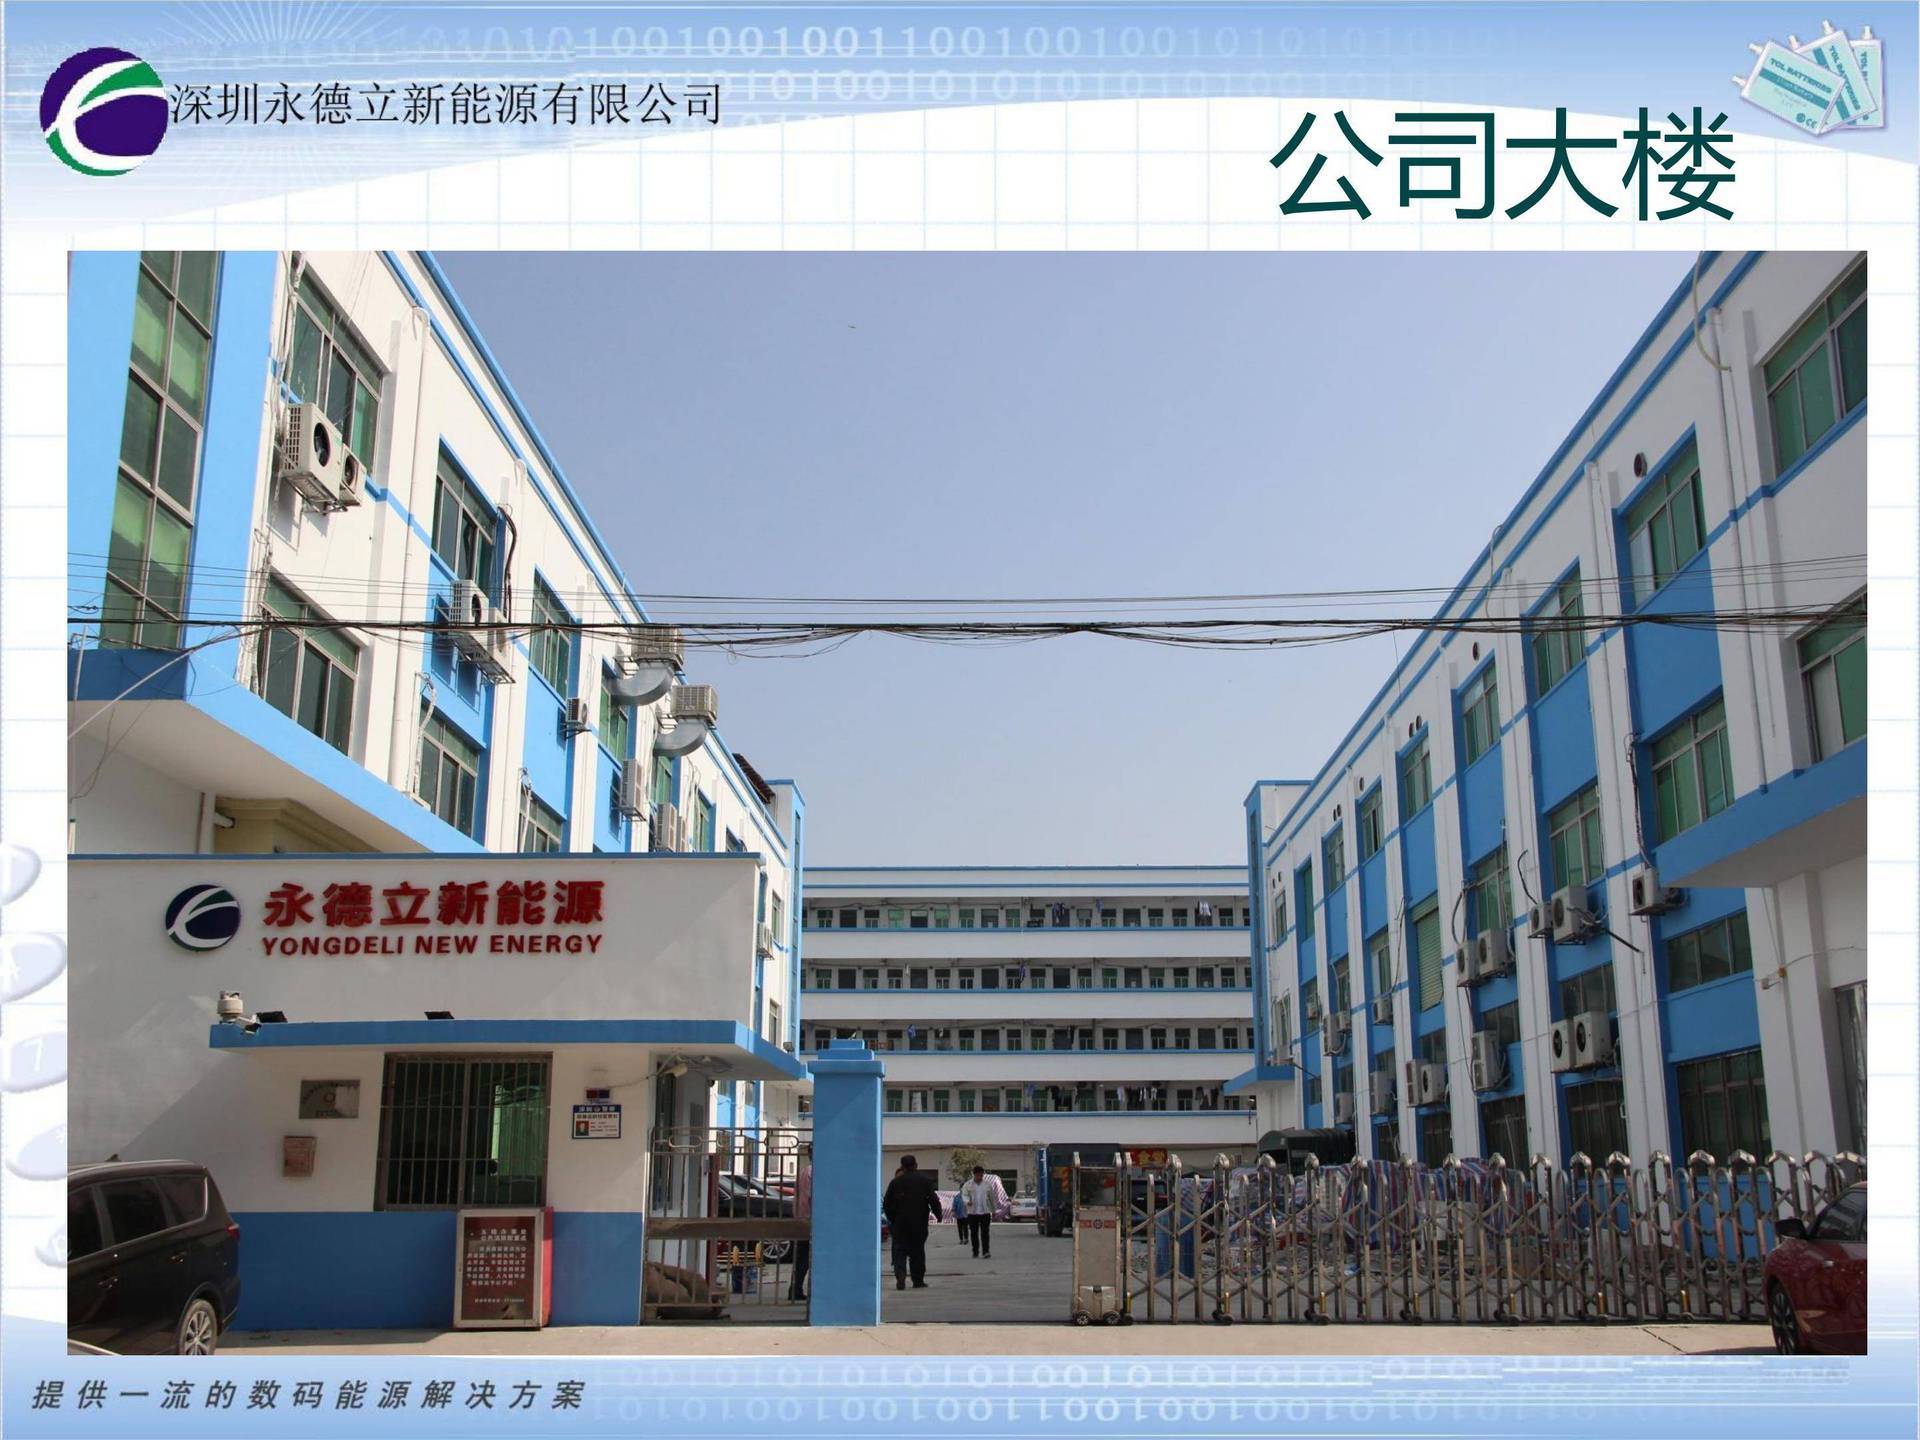 Shenzhen Yongdeli New Energy Co., Ltd